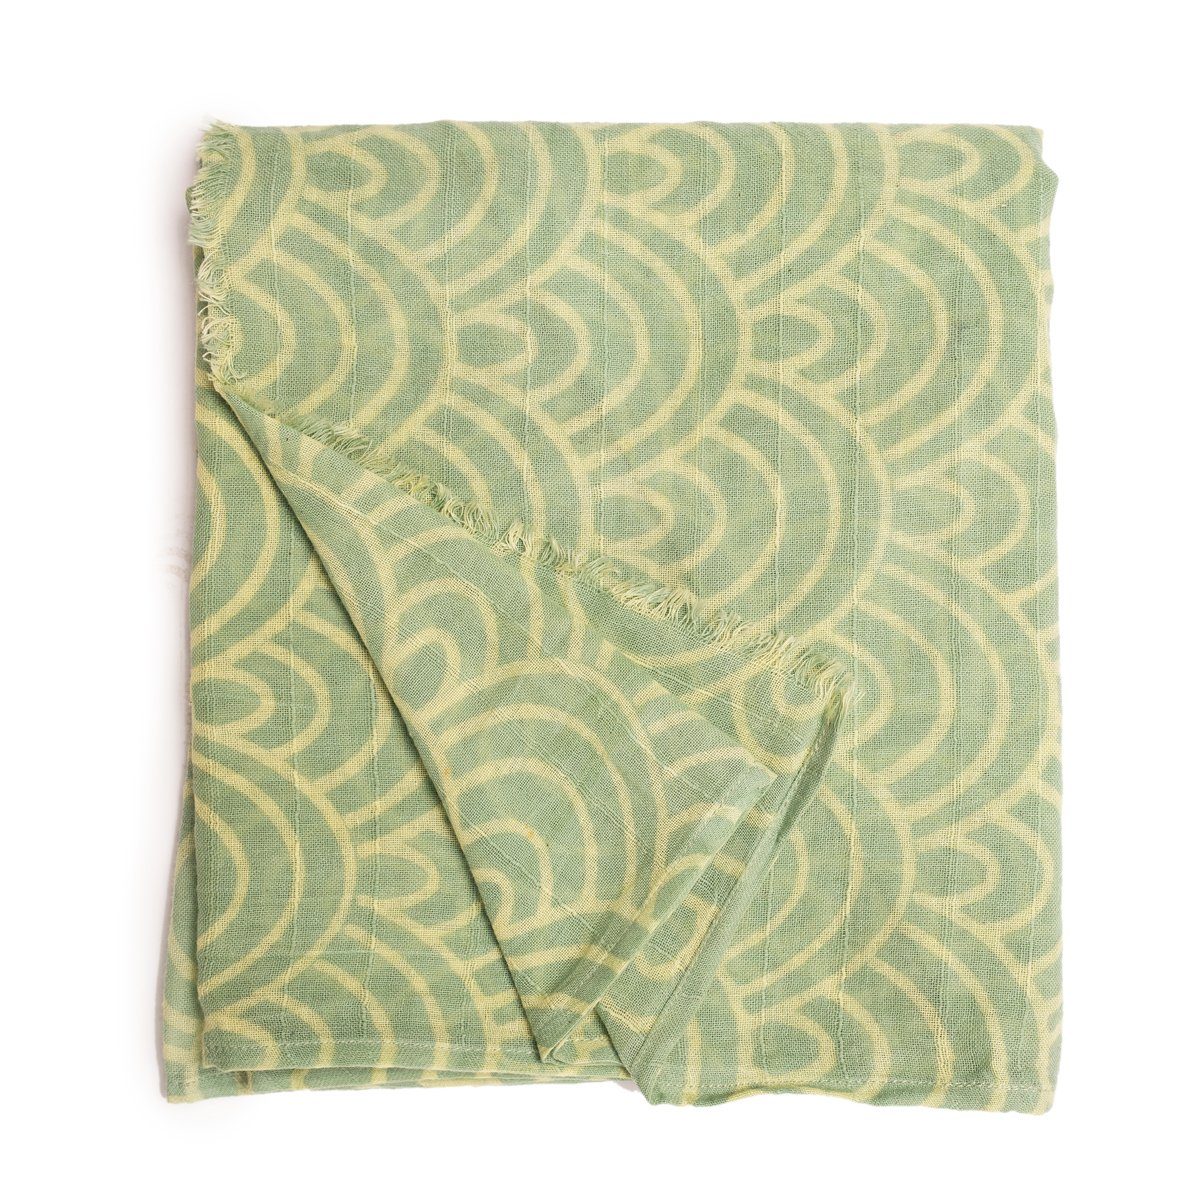 PANASIAM Halstuch elegantes Schaltuch auch als Schultertuch Schal oder Stola tragbar, in schönen farbigen Designs mit kleinen Fransen aus Baumwolle Grün Seigaiha